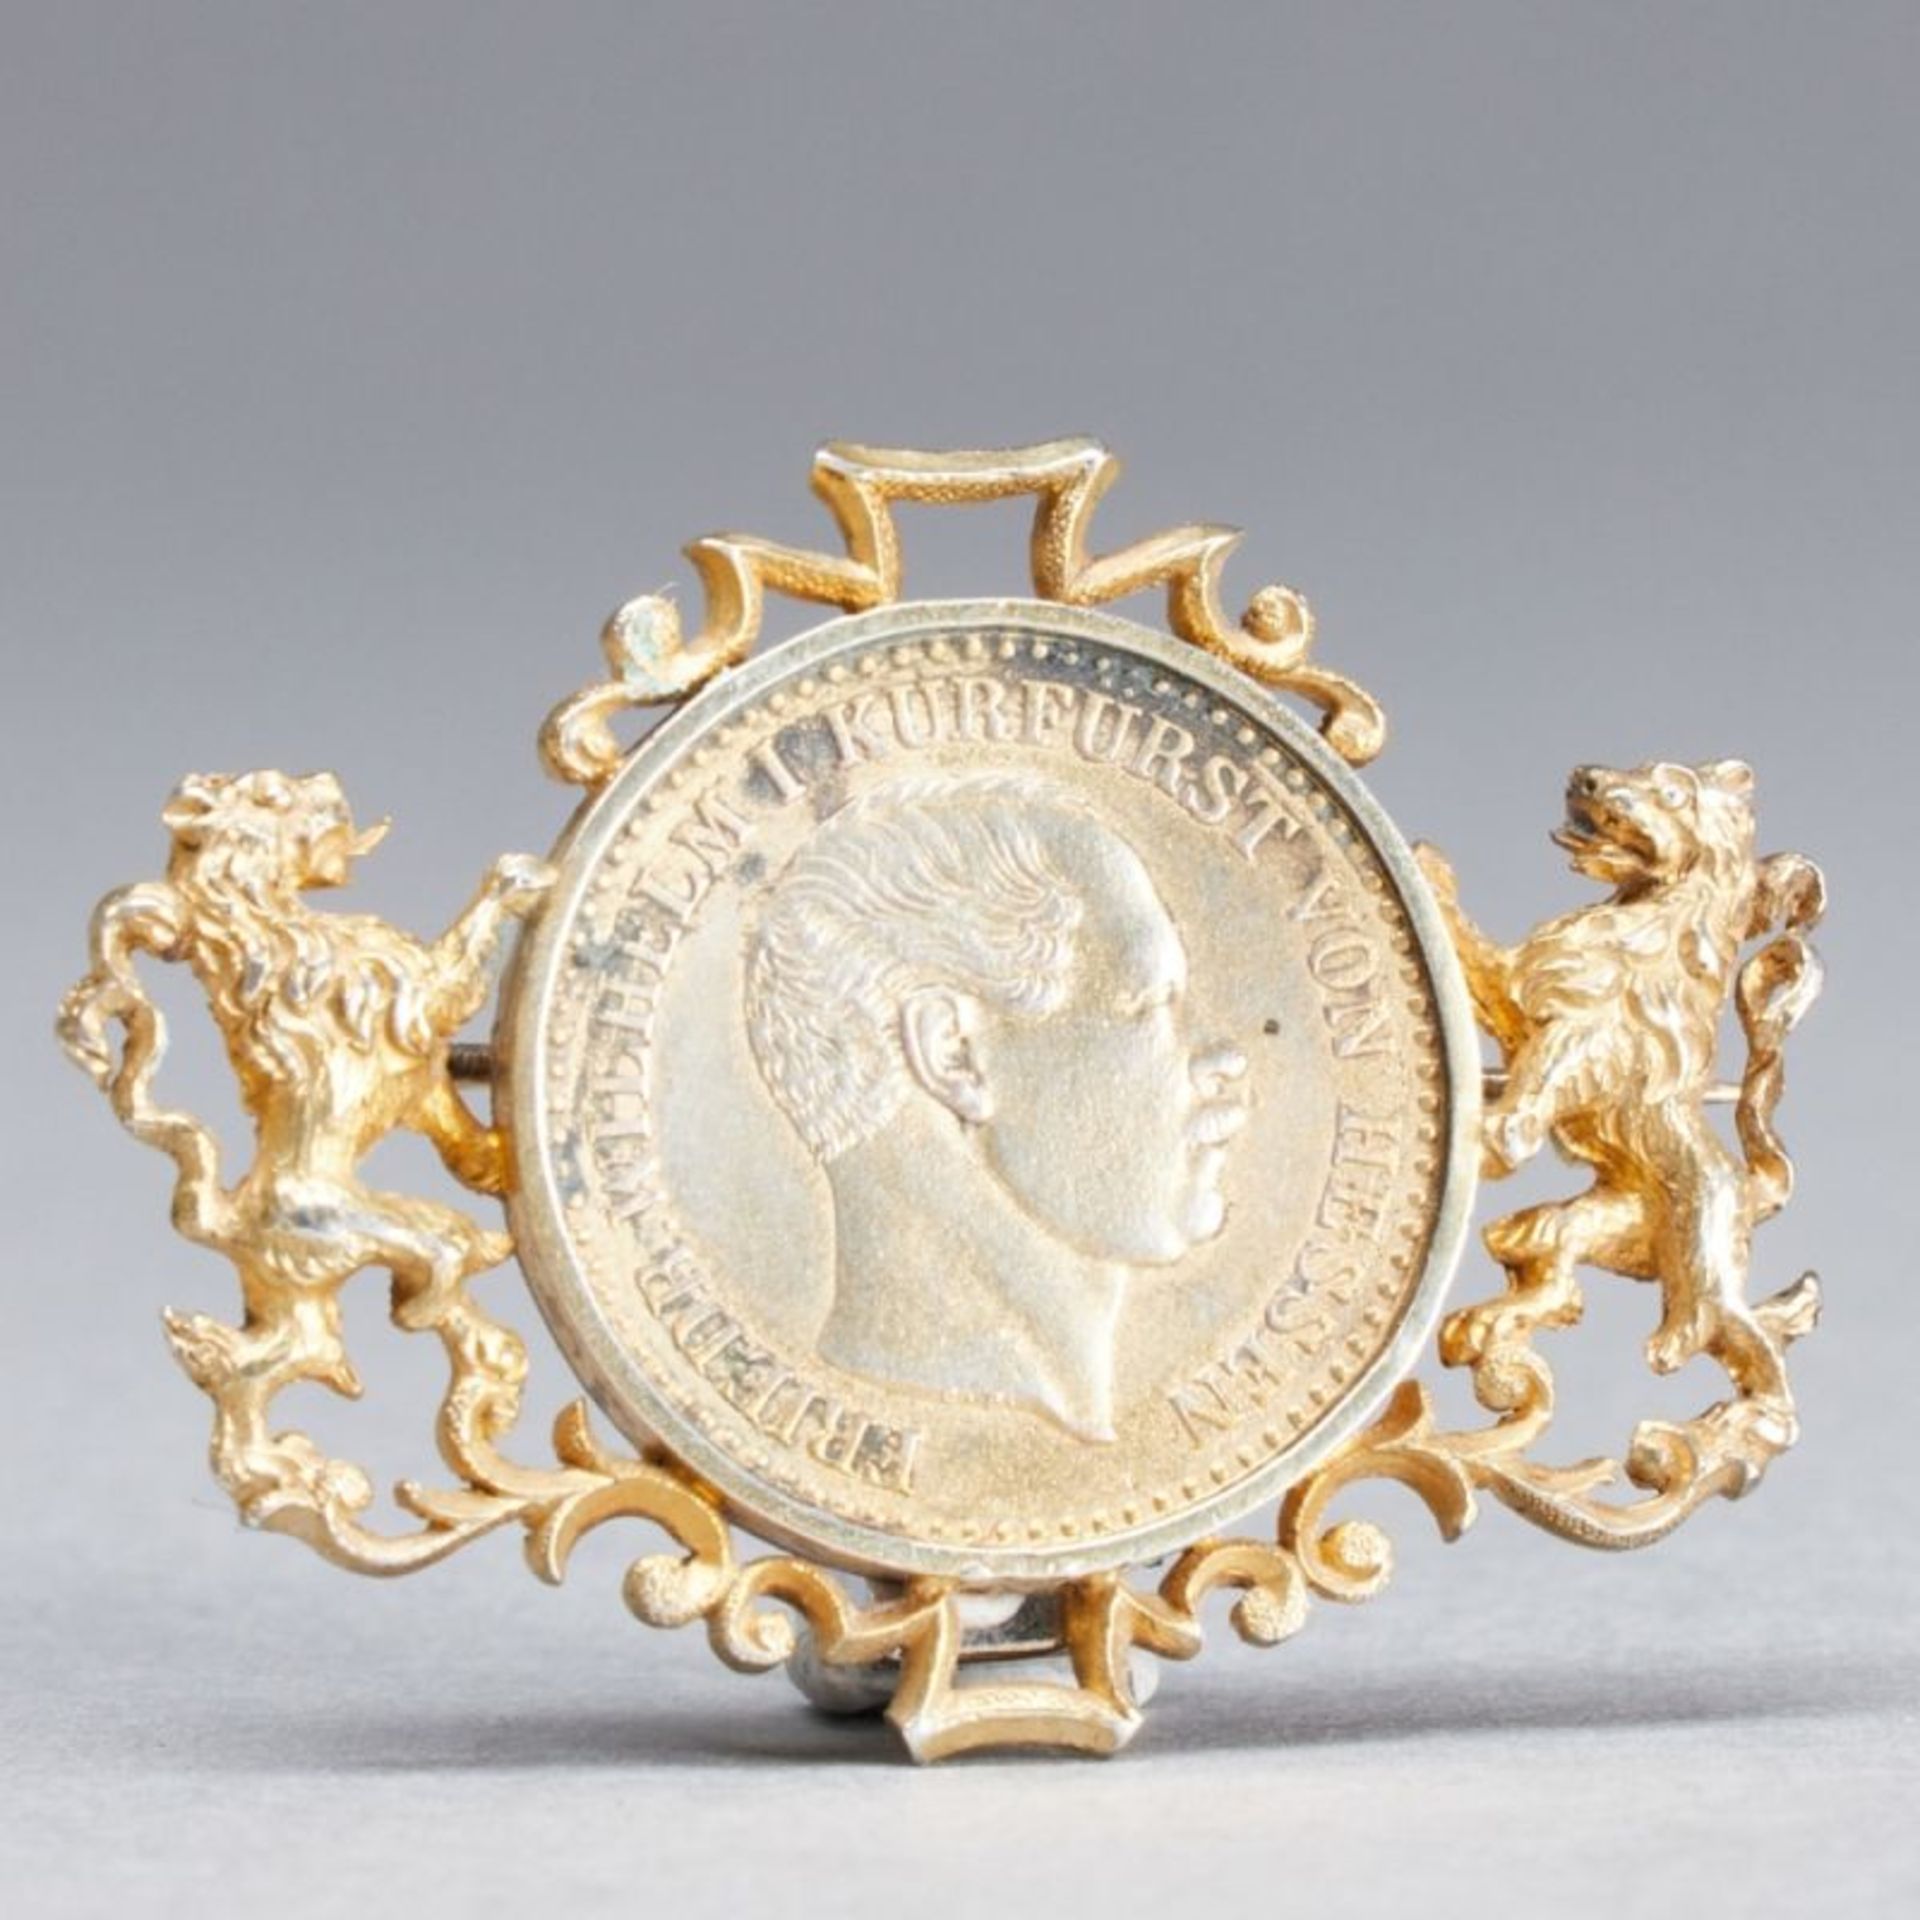 Silbermünze in Montierung als Anstecknadel, Deutschland, zweite Hälfte 19. Jahrhundert